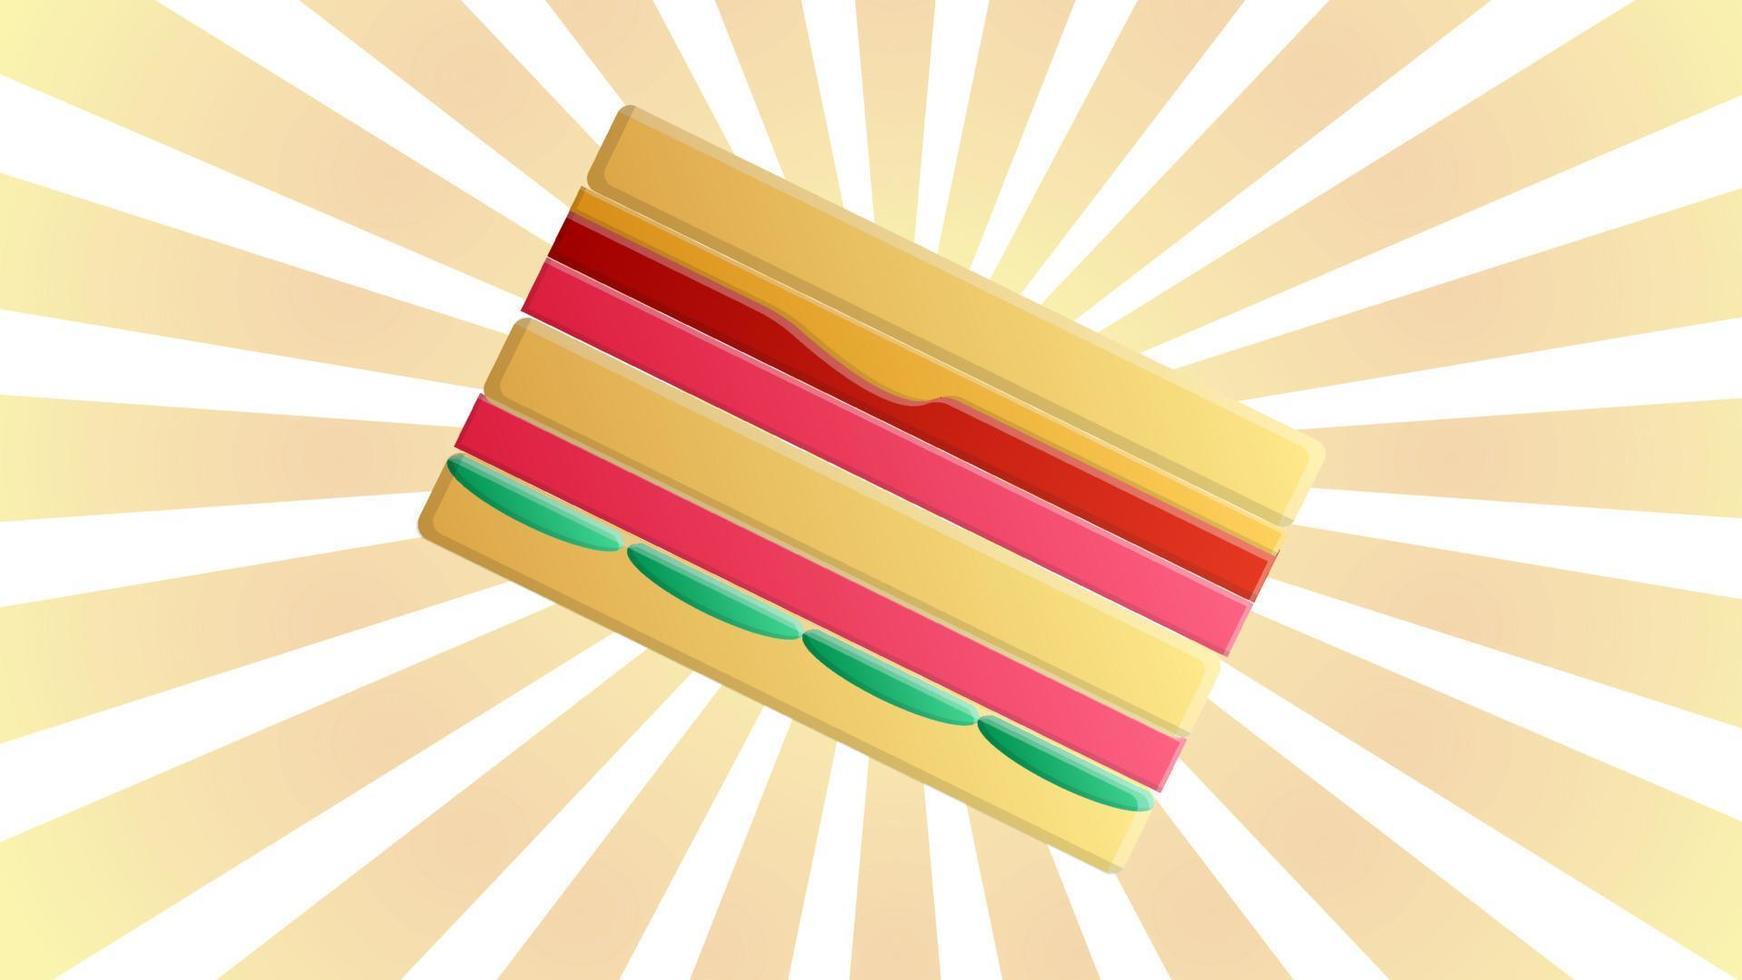 sándwich - linda imagen en color de dibujos animados. elementos de diseño gráfico para menú, embalaje, publicidad, afiche, folleto o fondo. ilustración vectorial de comida rápida vector